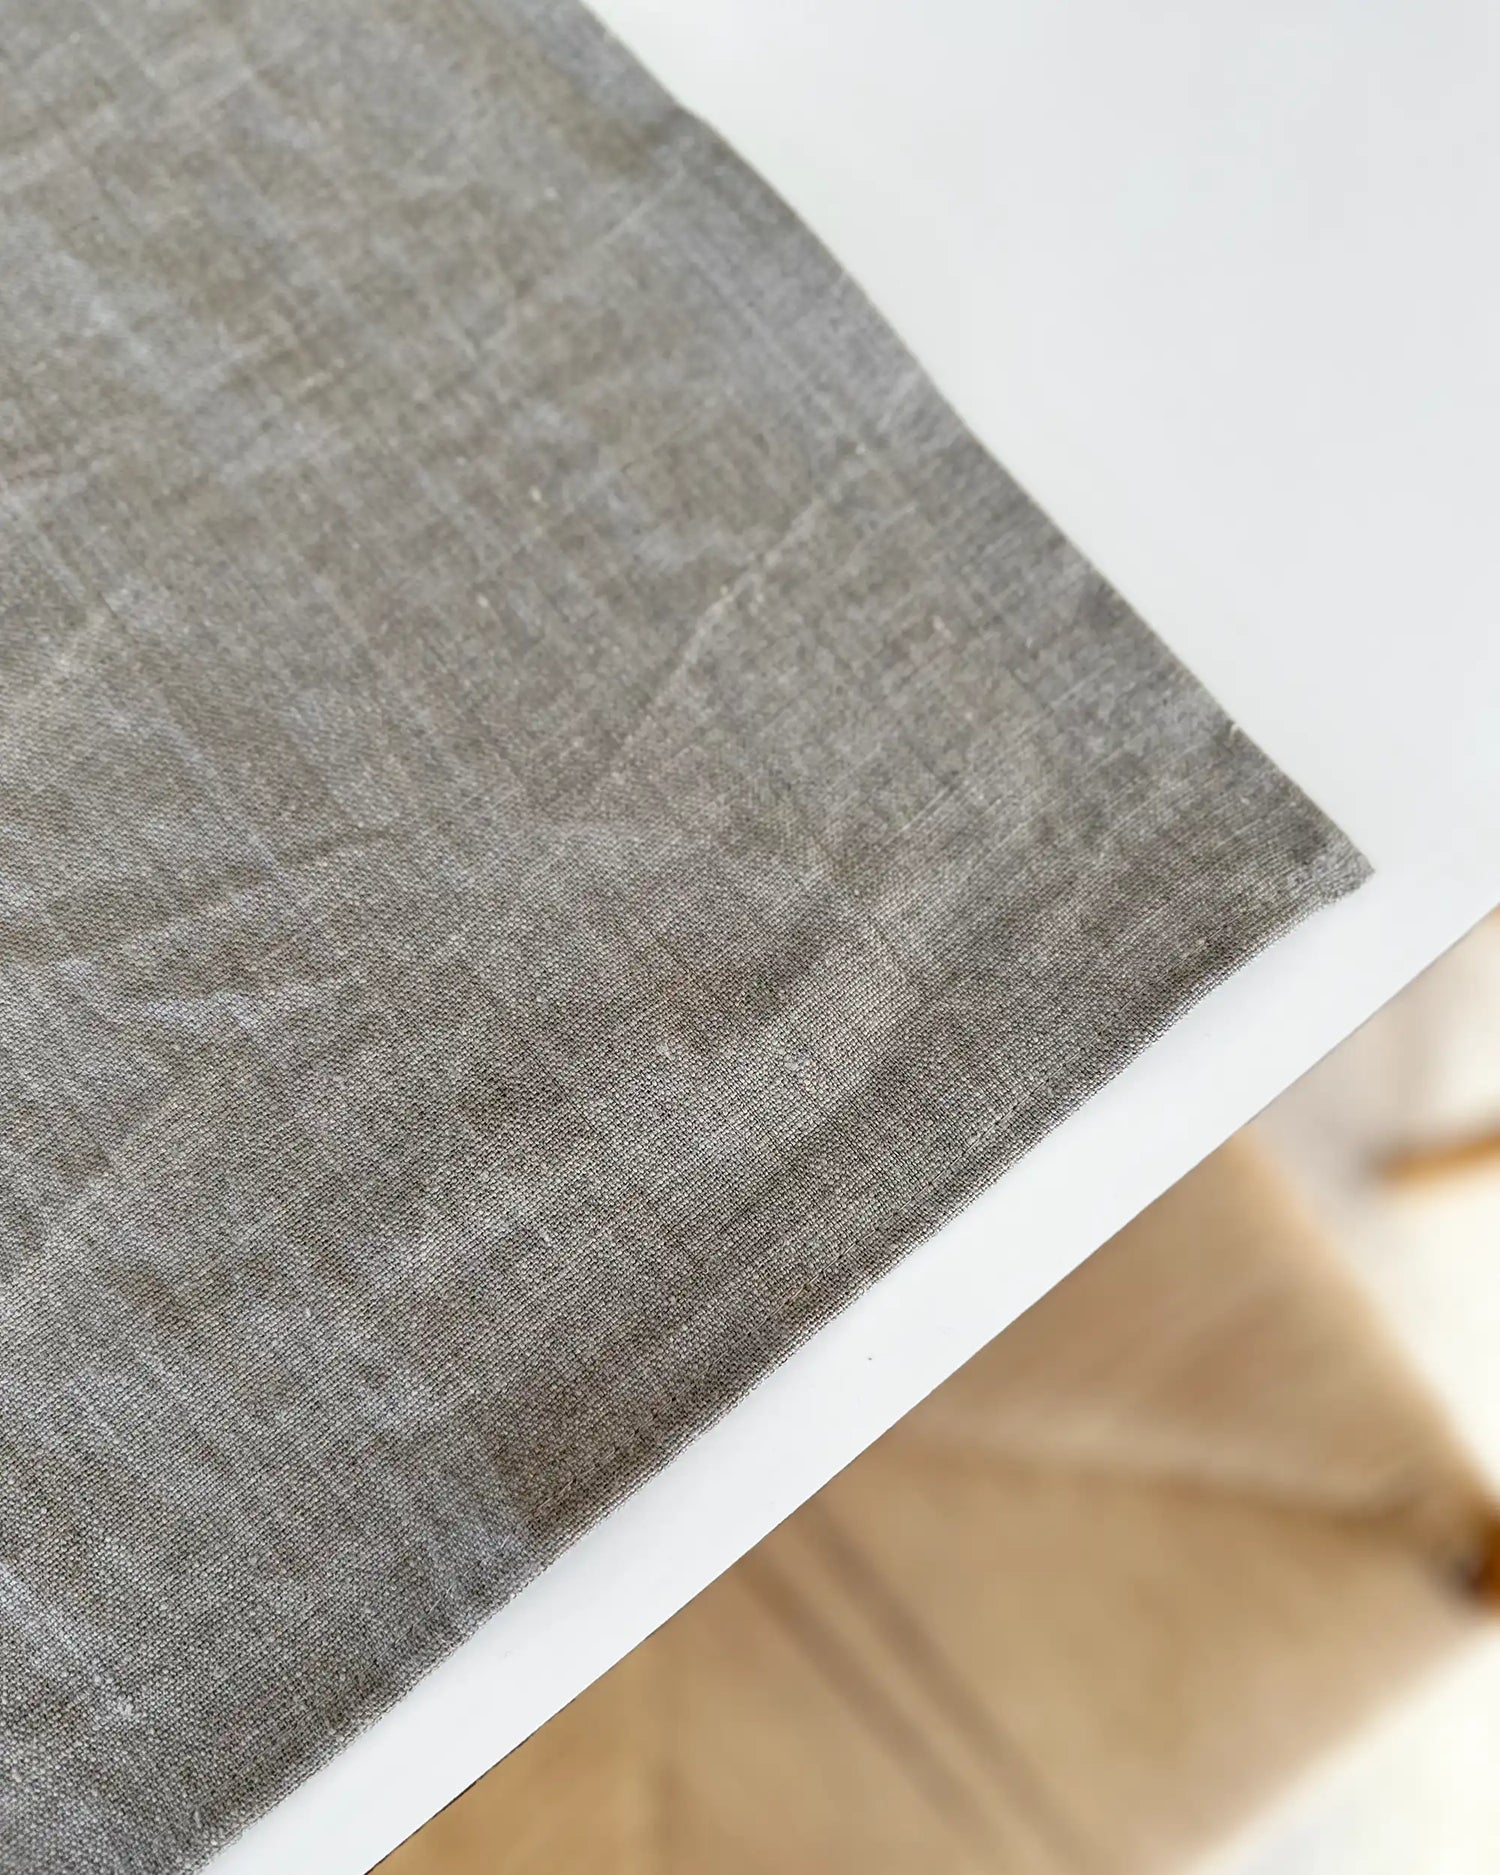 Ett handsytt bordsunderlägg i stentvättat linne ligger på ett vitt bord. 